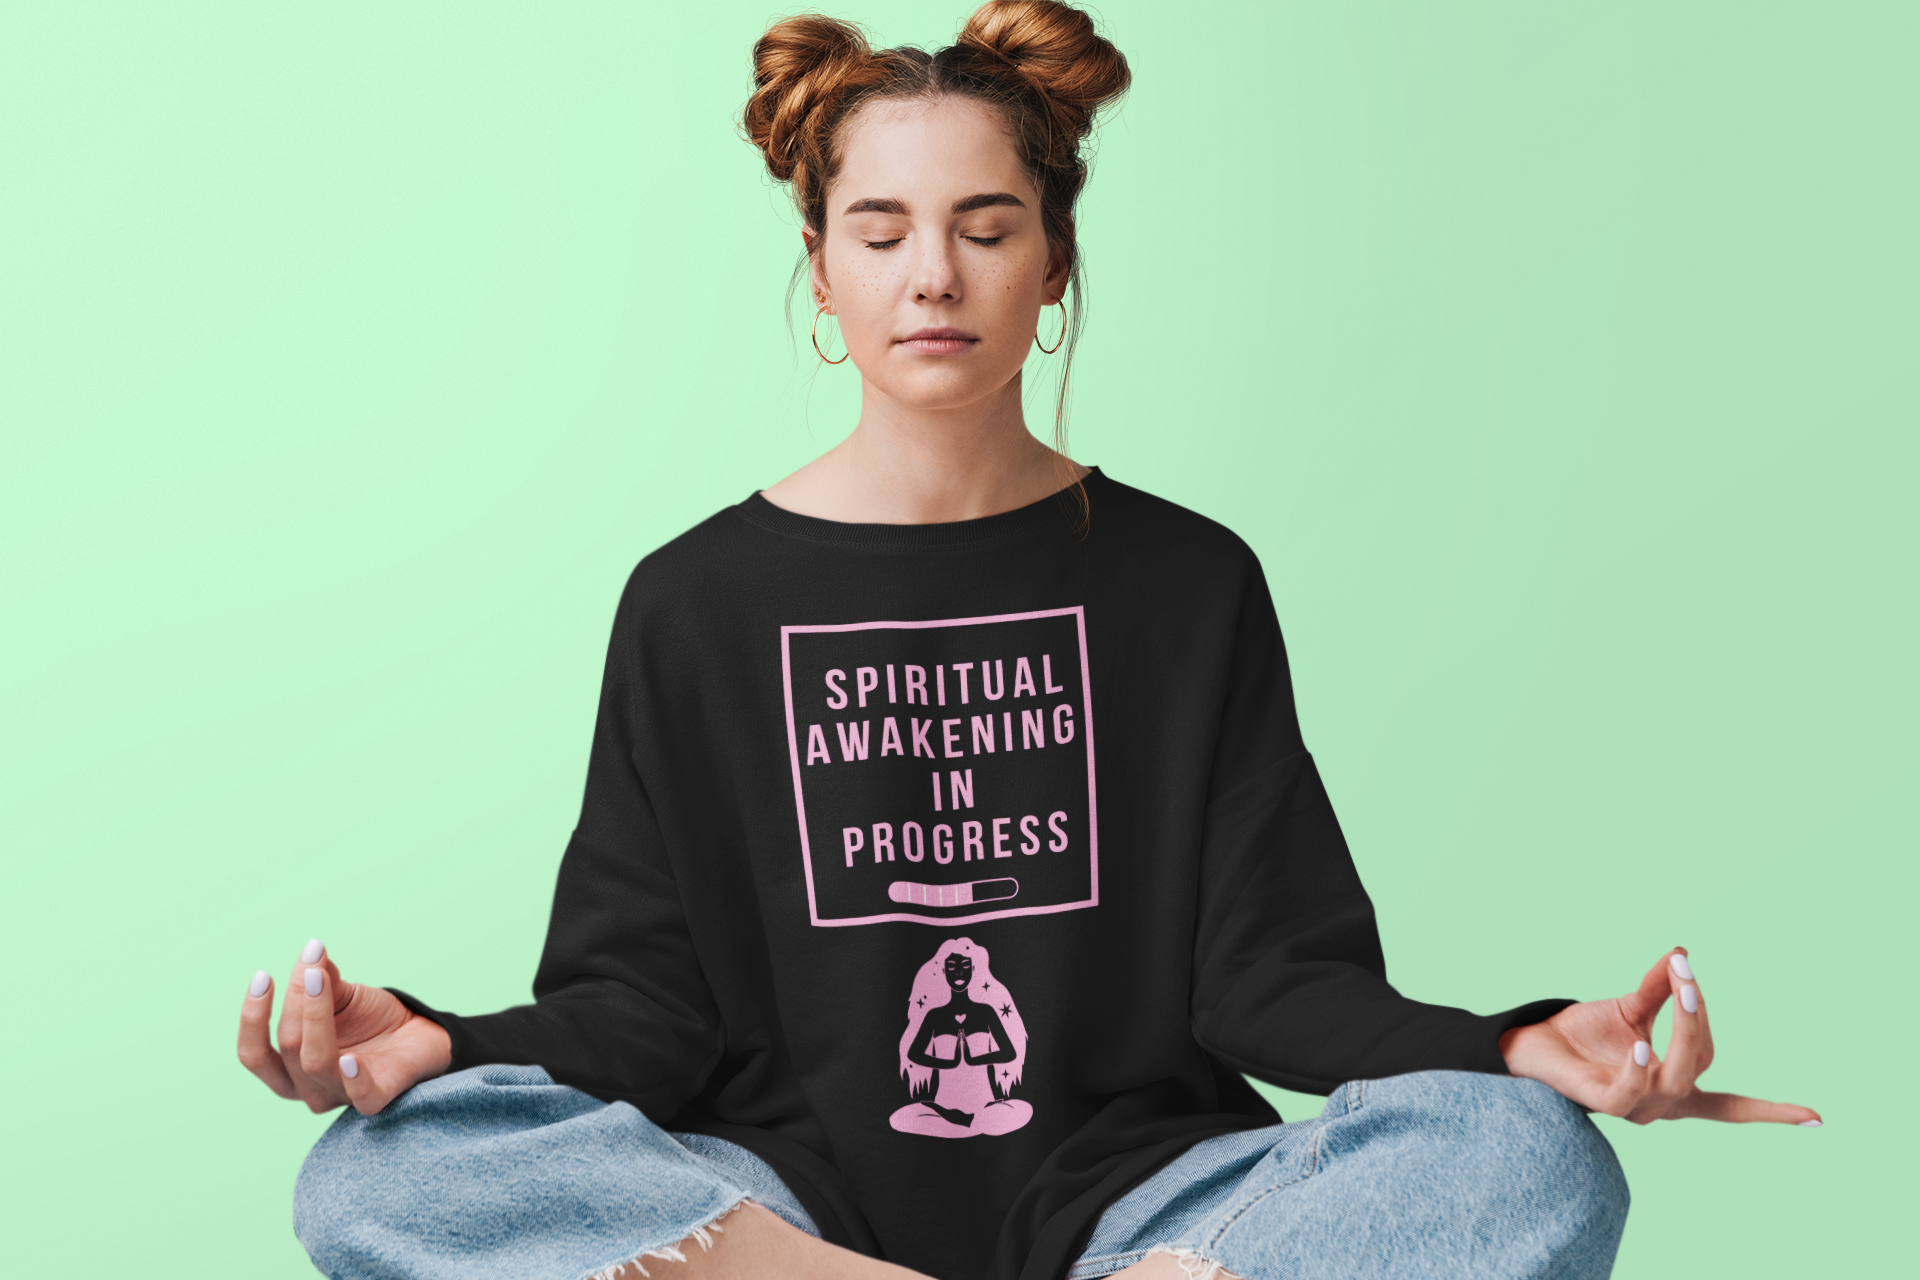 Spiritual woman meditating wearing a spiritual awakening t-shirt.